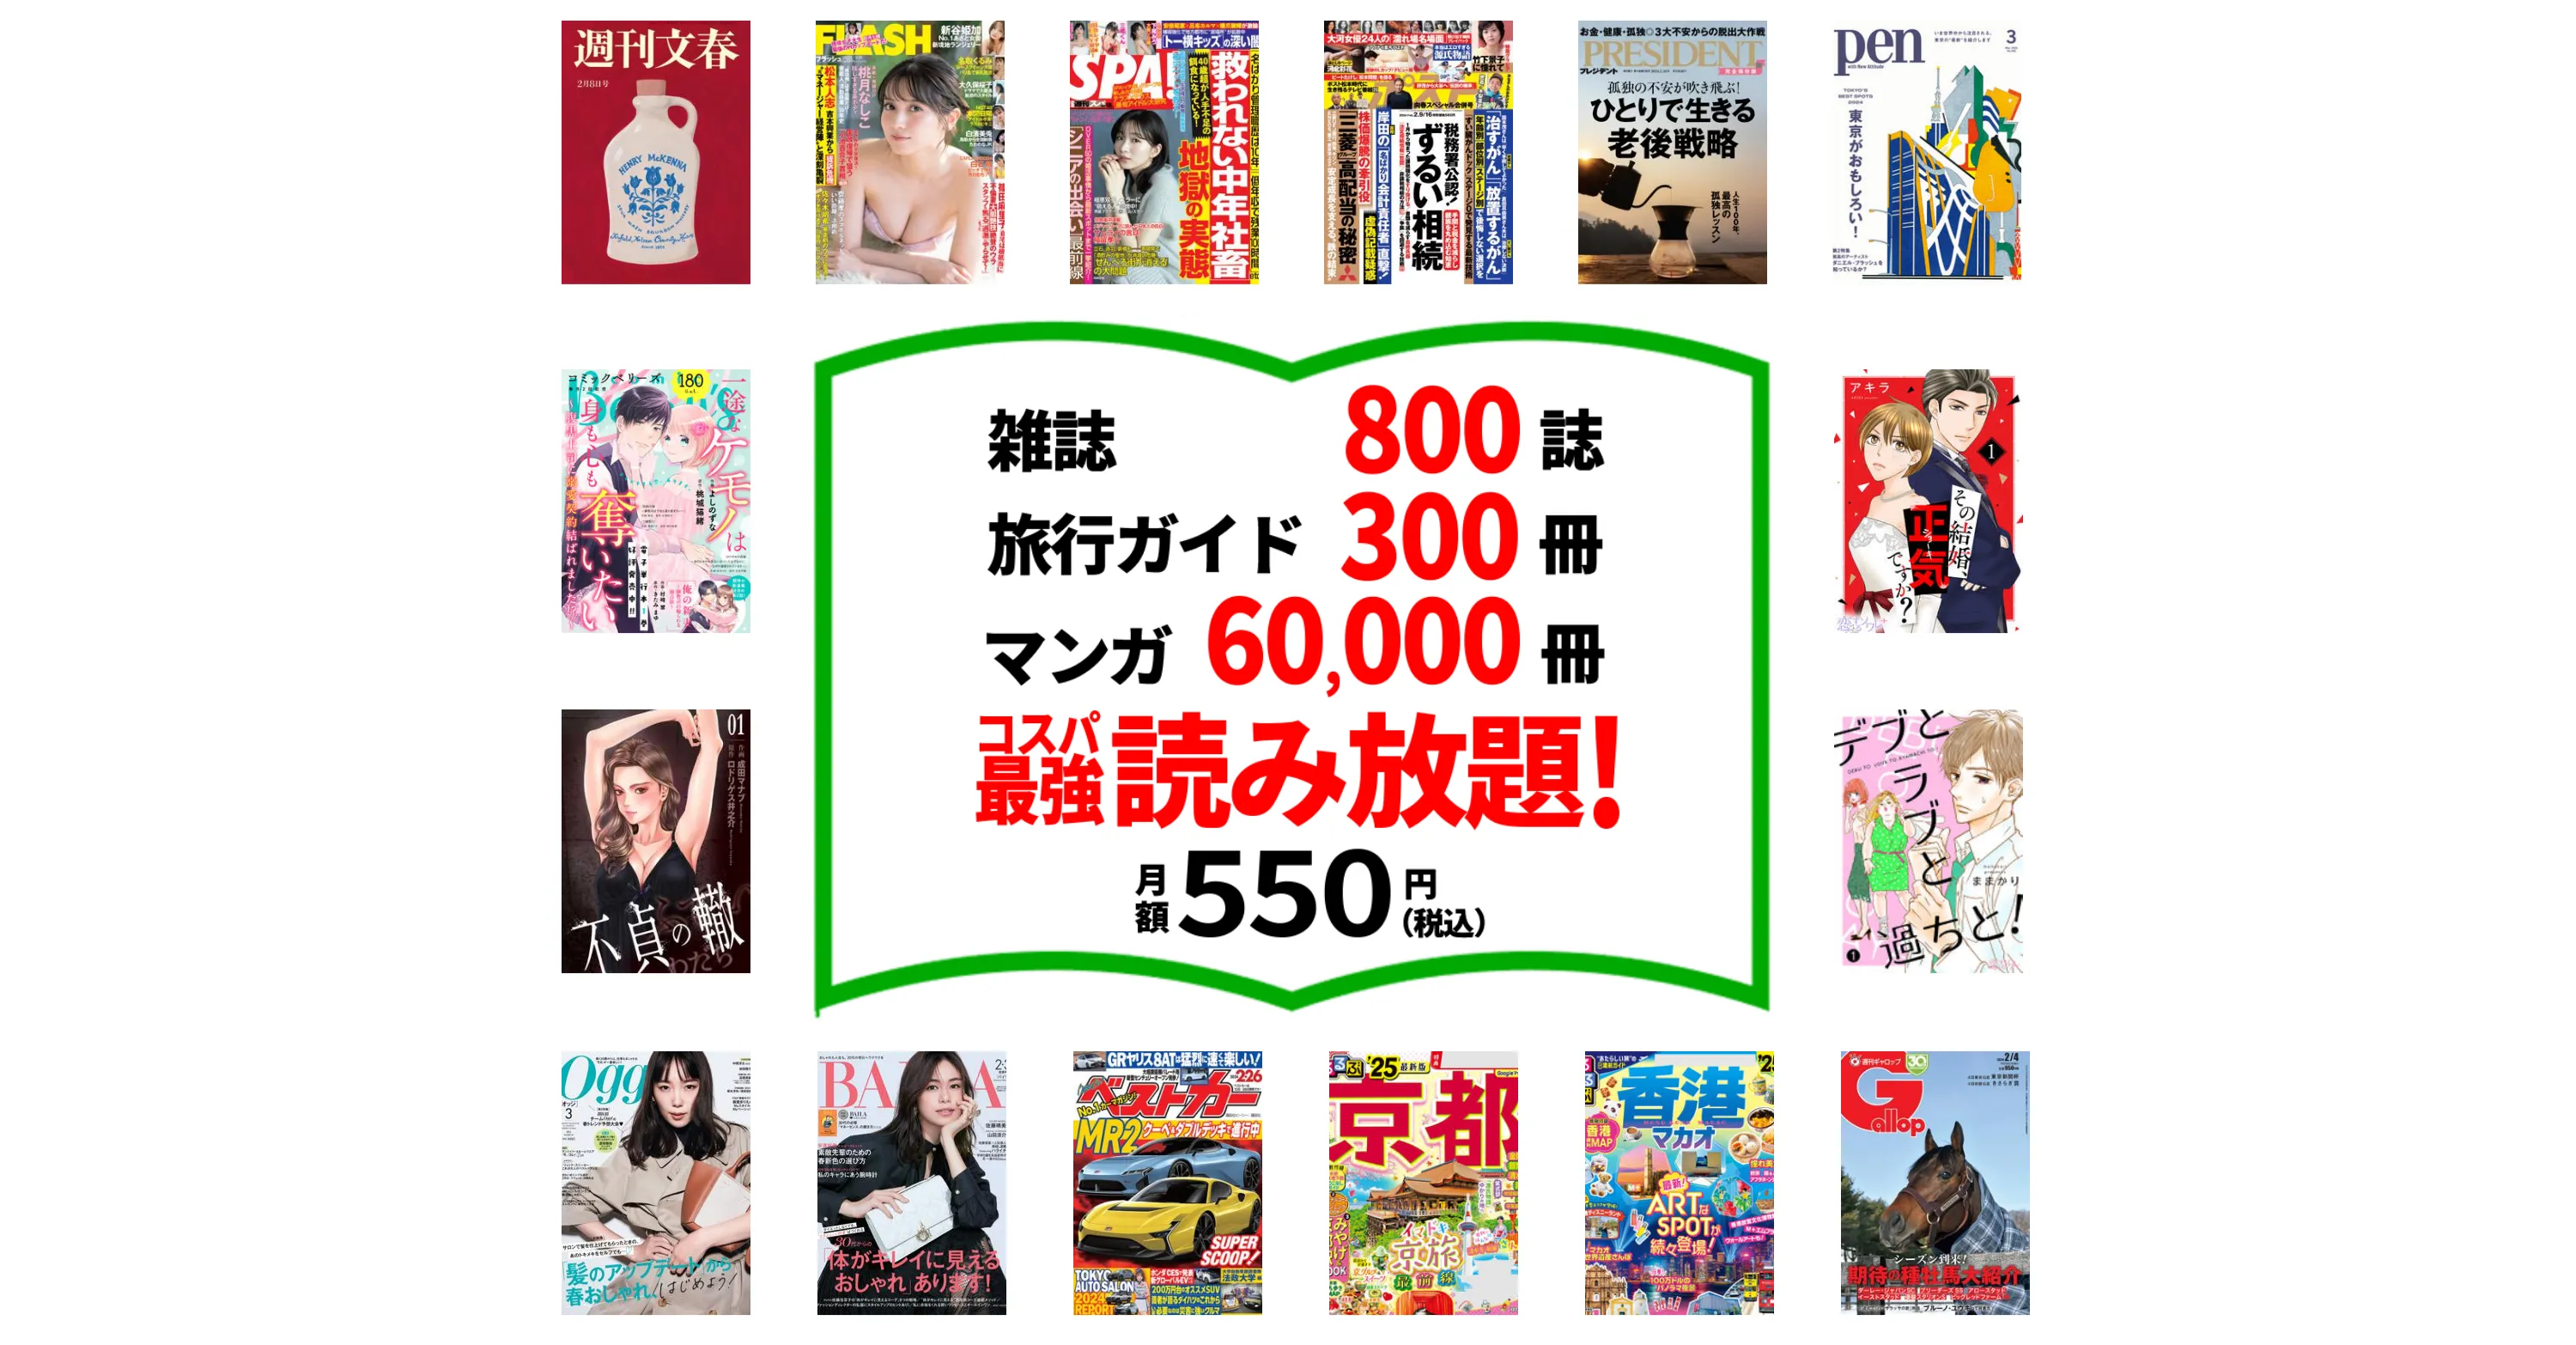 たった550円で雑誌800誌 旅行ガイド300冊 漫画60,000冊以上読み放題。最初の1ヵ月無料。